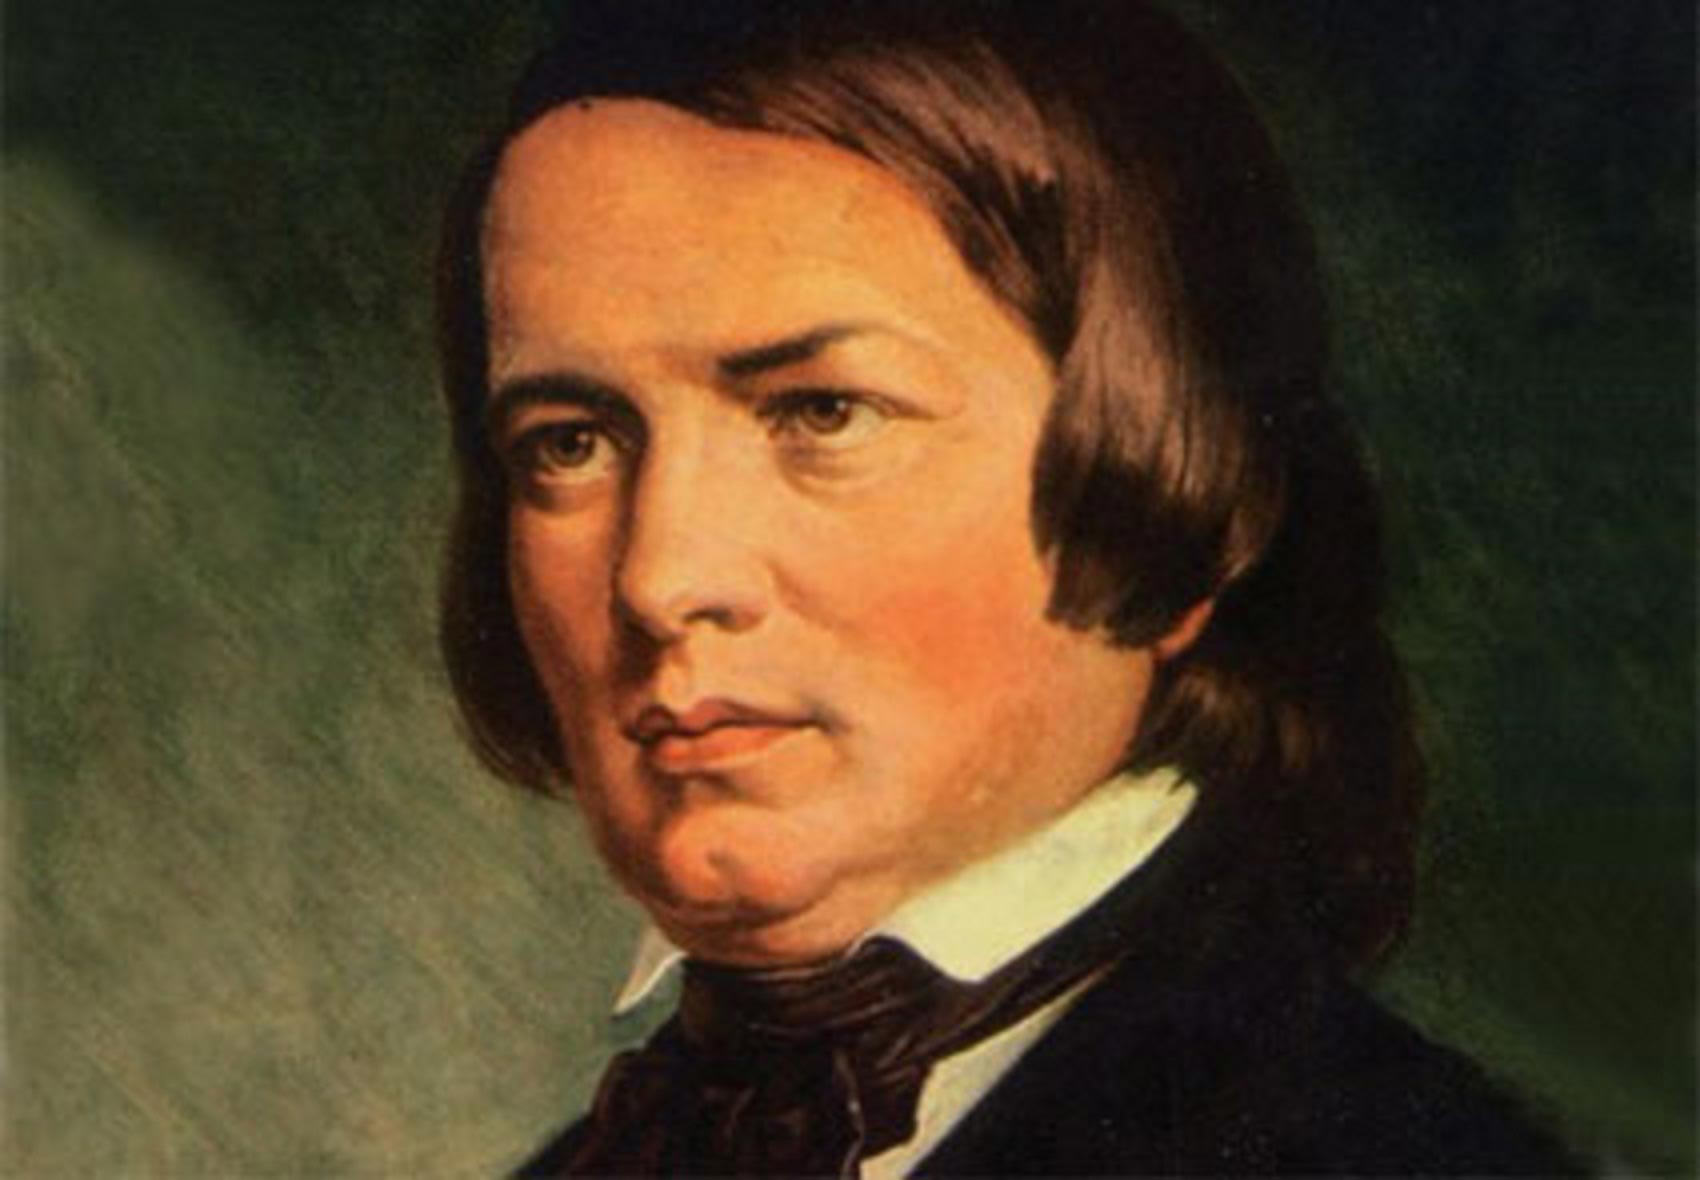  Robert Schumann